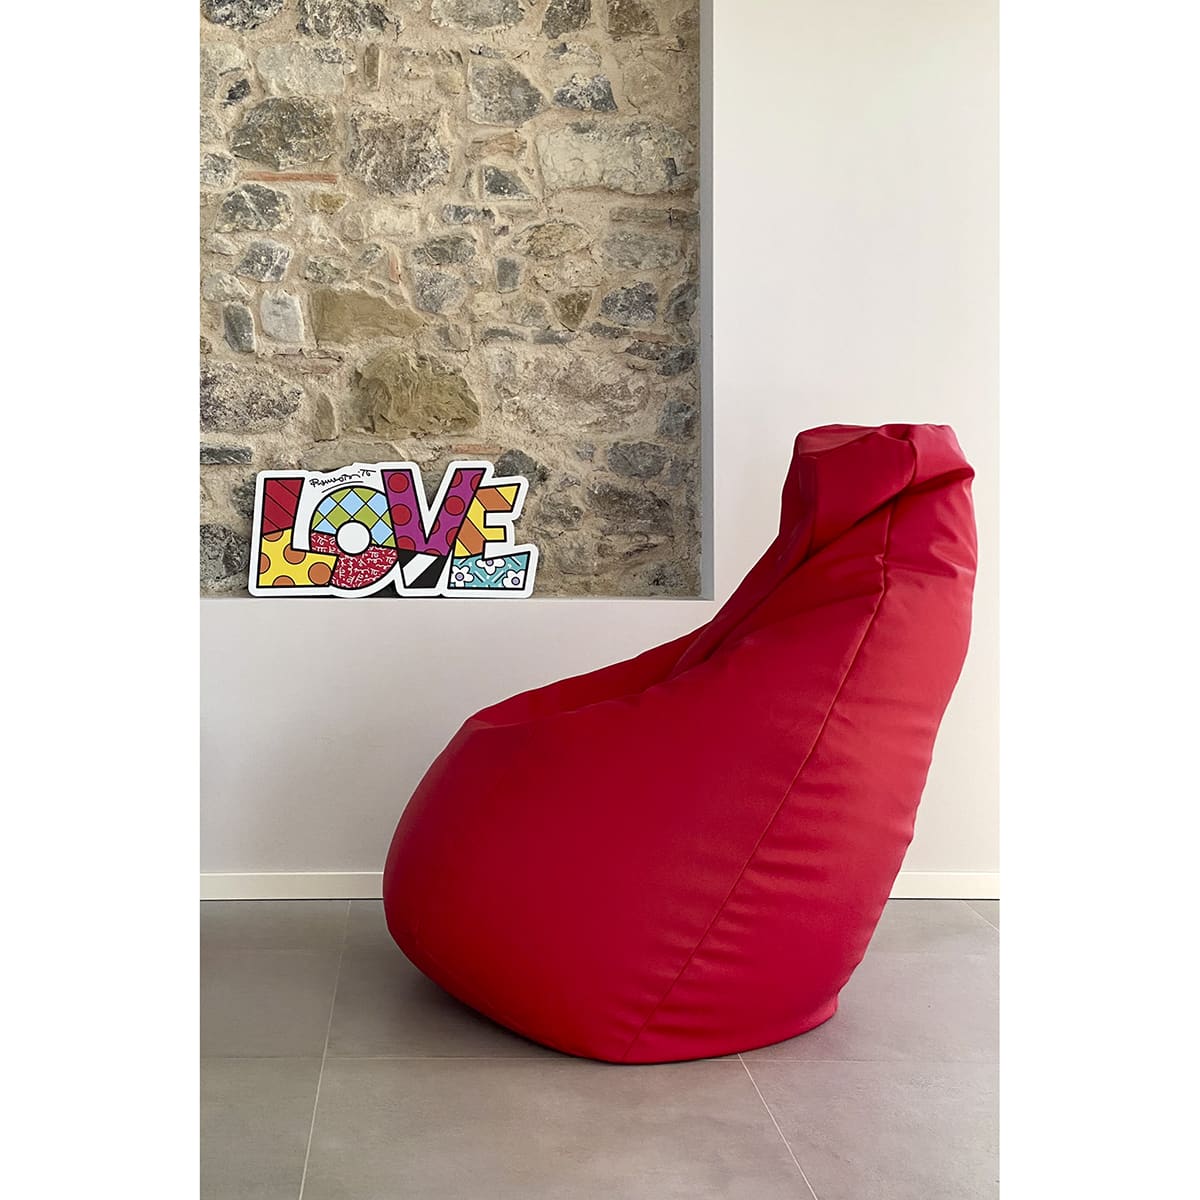 un pannello decorativo con la scritta pop "Love" è appoggiato sulla rientranza di un muro di pietra vicino ad una poltrona sacco rossa